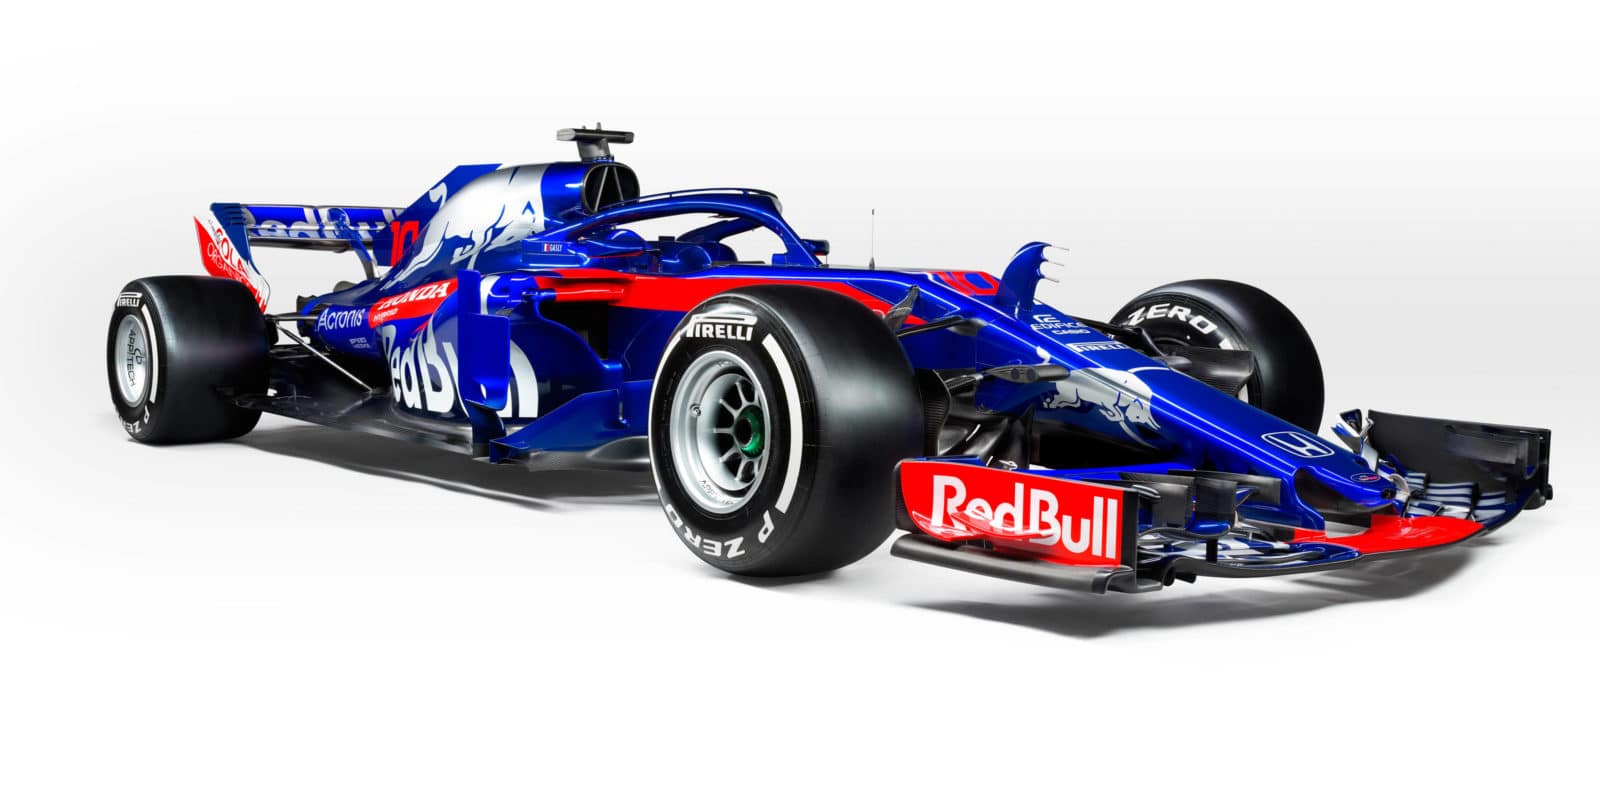 Toro Rosso jde s novým vozem do čela kalendáře prezentací